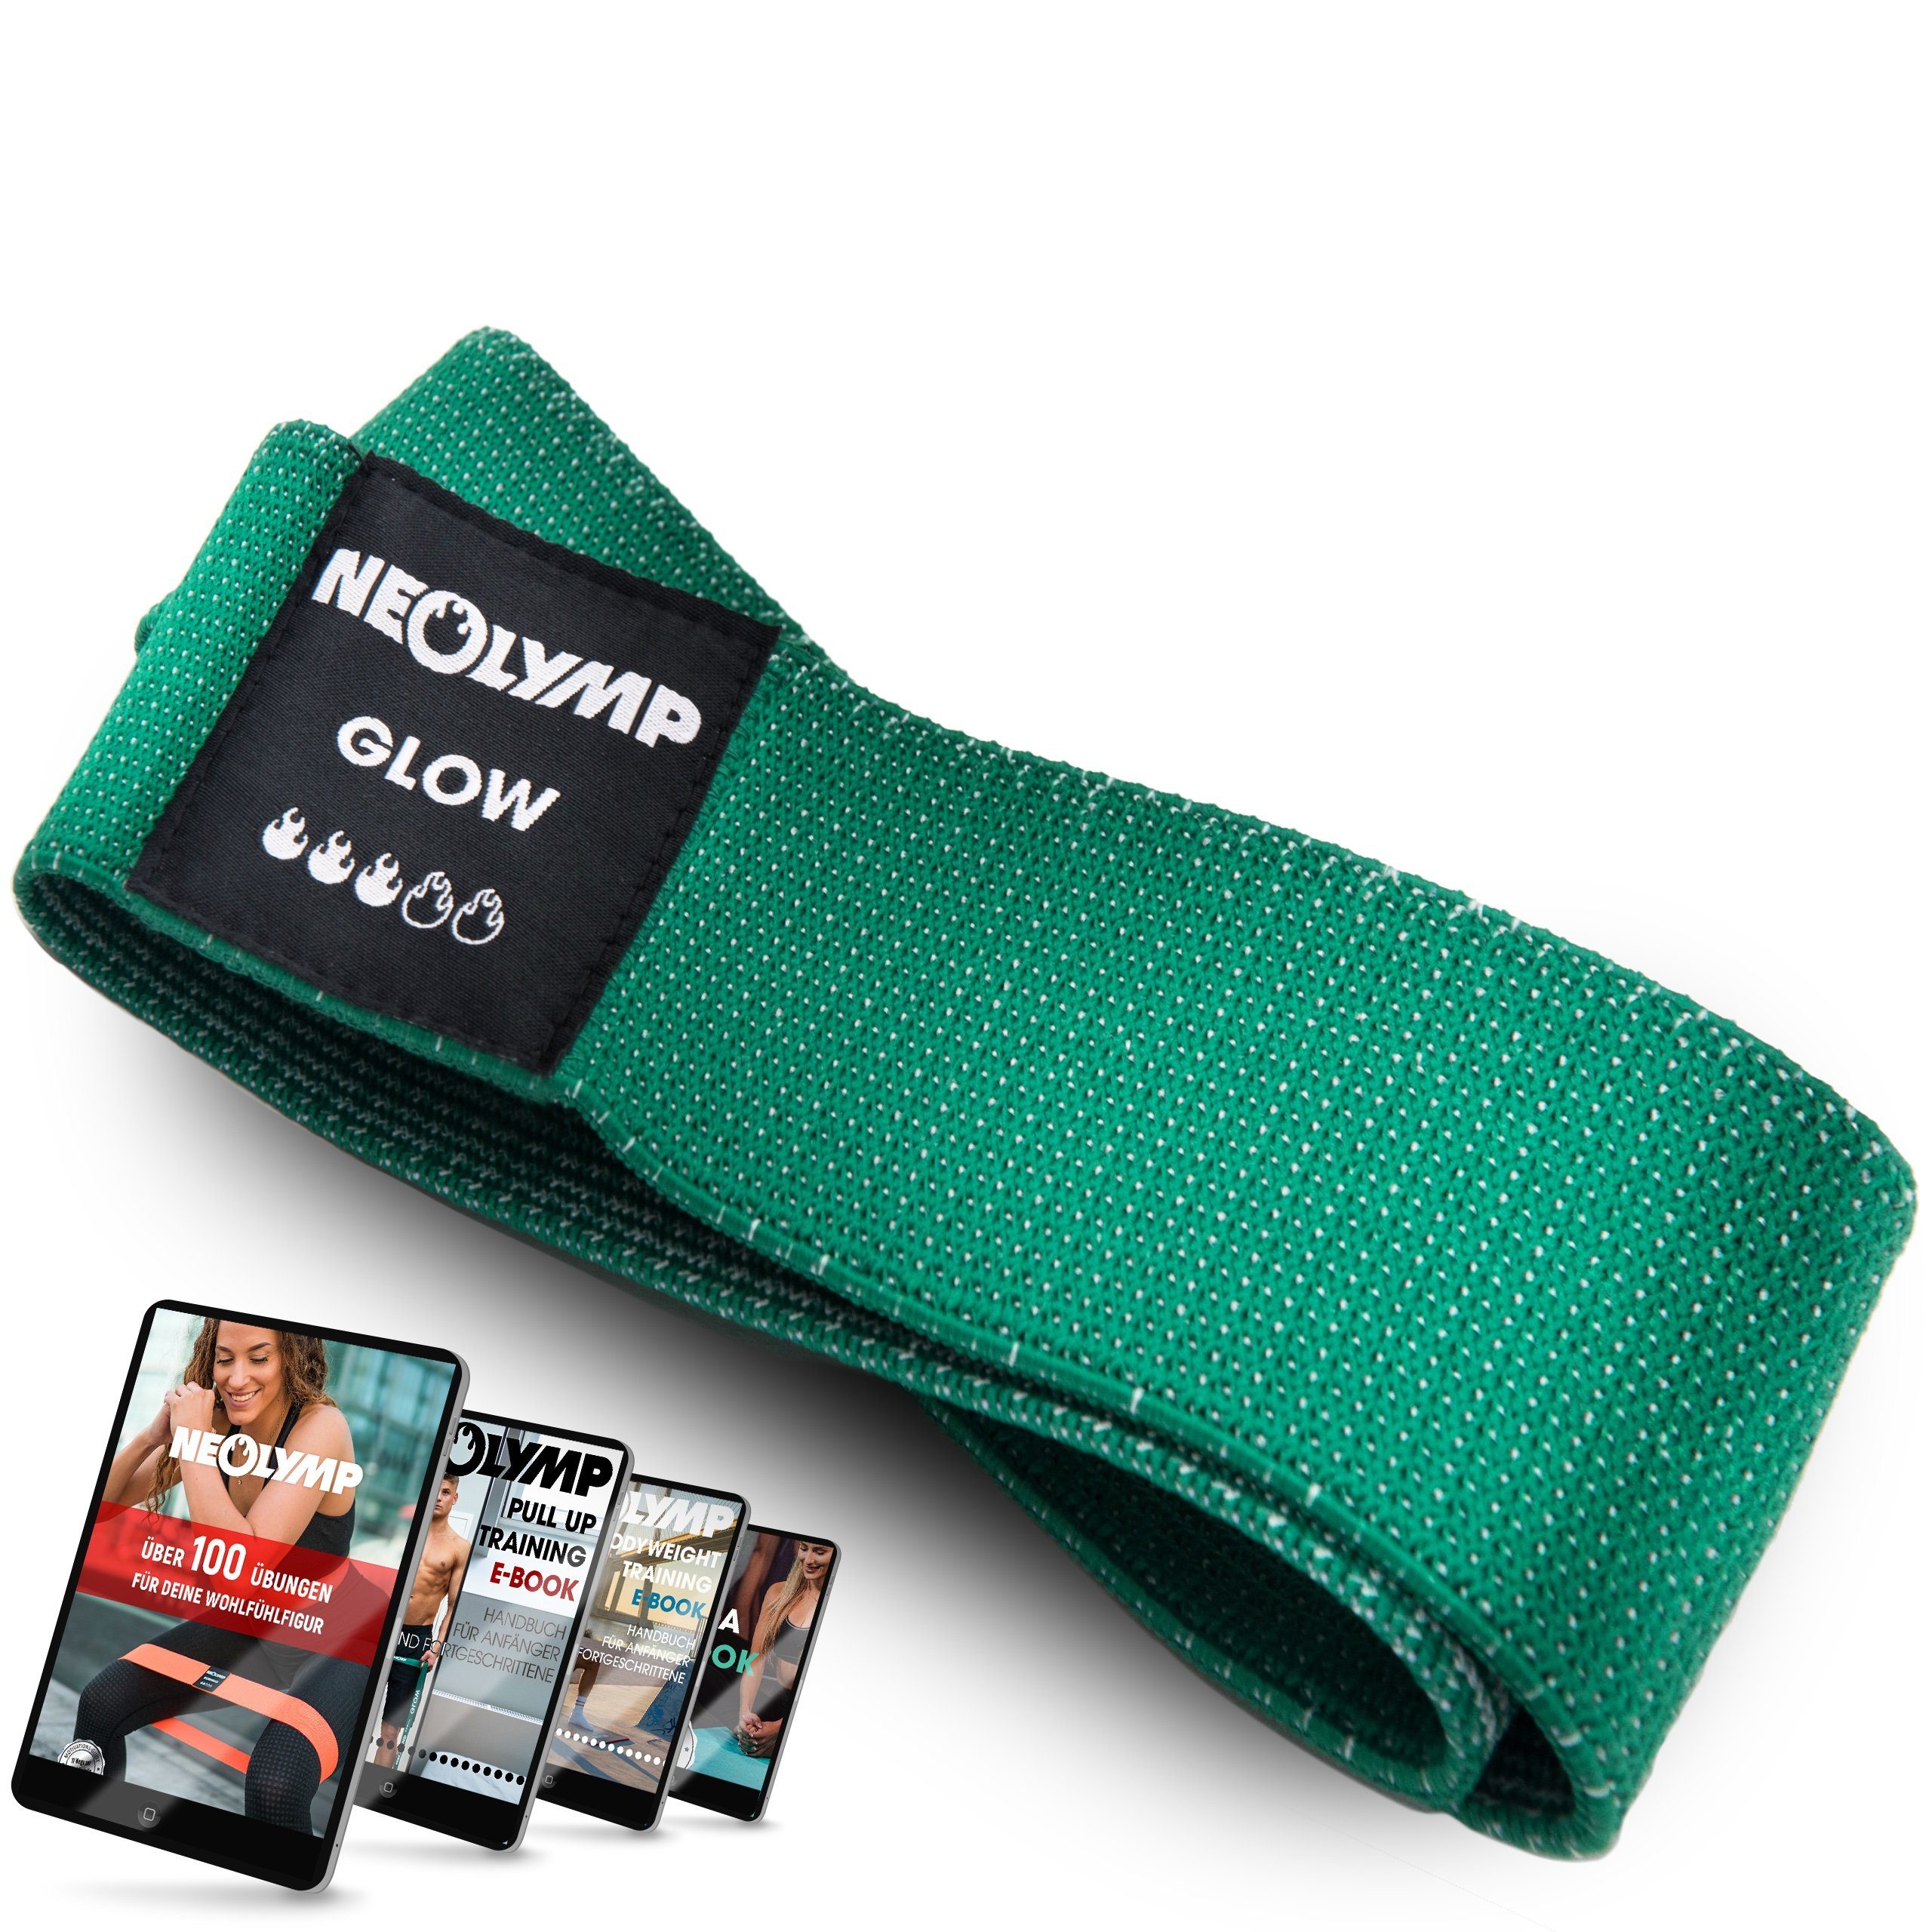 NEOLYMP Trainingsband Premium MinibänderI Fitnessbänder Bauch Beine PoI Trainingsband IMB310, Naturfasern, komfortabel, mit E-Book, langlebig, hygienisch, waschbar Stufe 3 grün